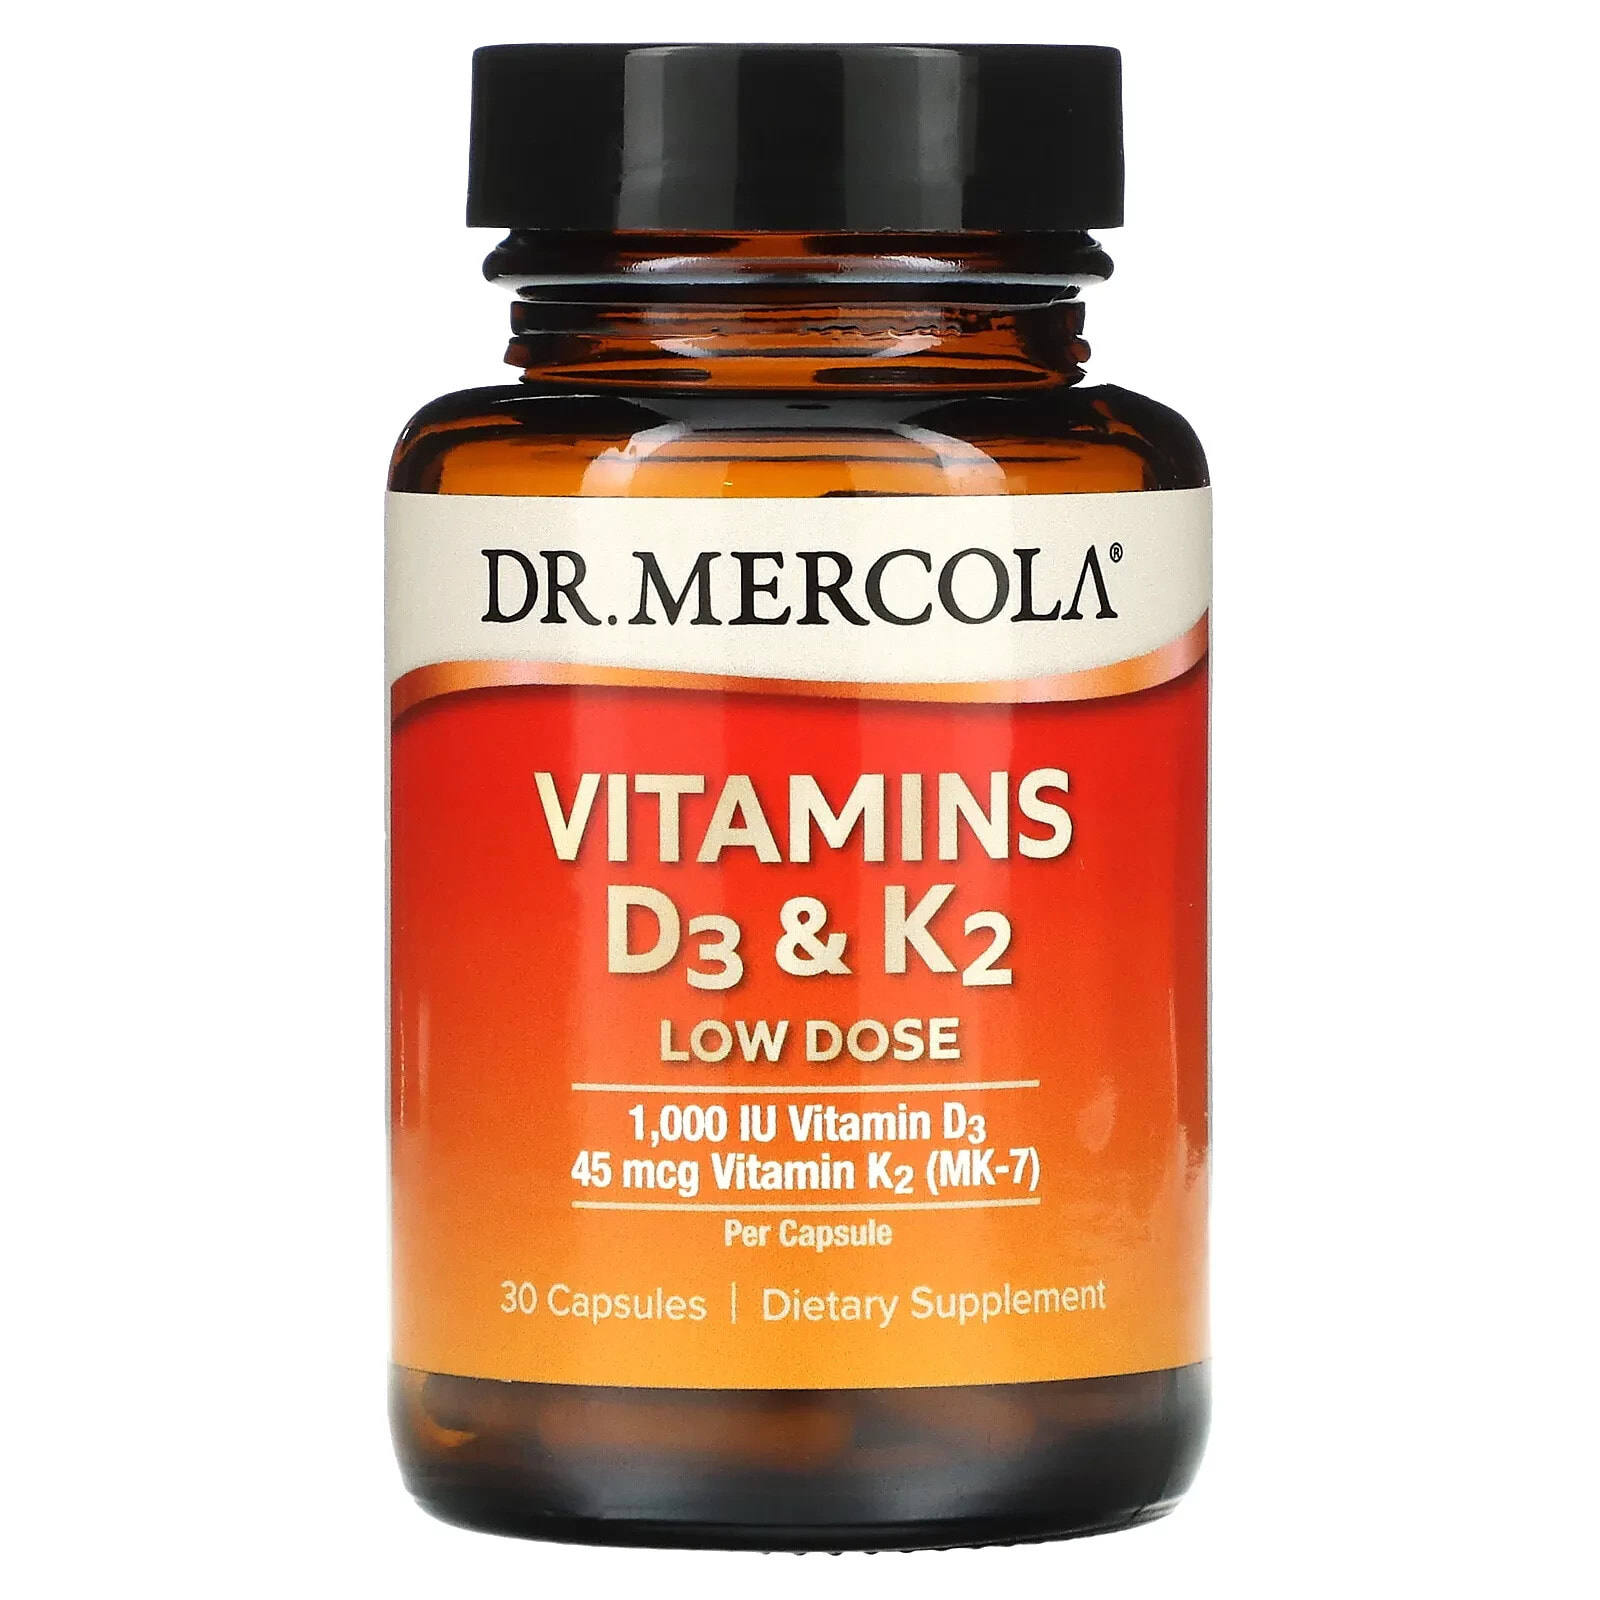 ДР. Меркола, Витамины D3 и K2 в низкой дозе, 30 капсул